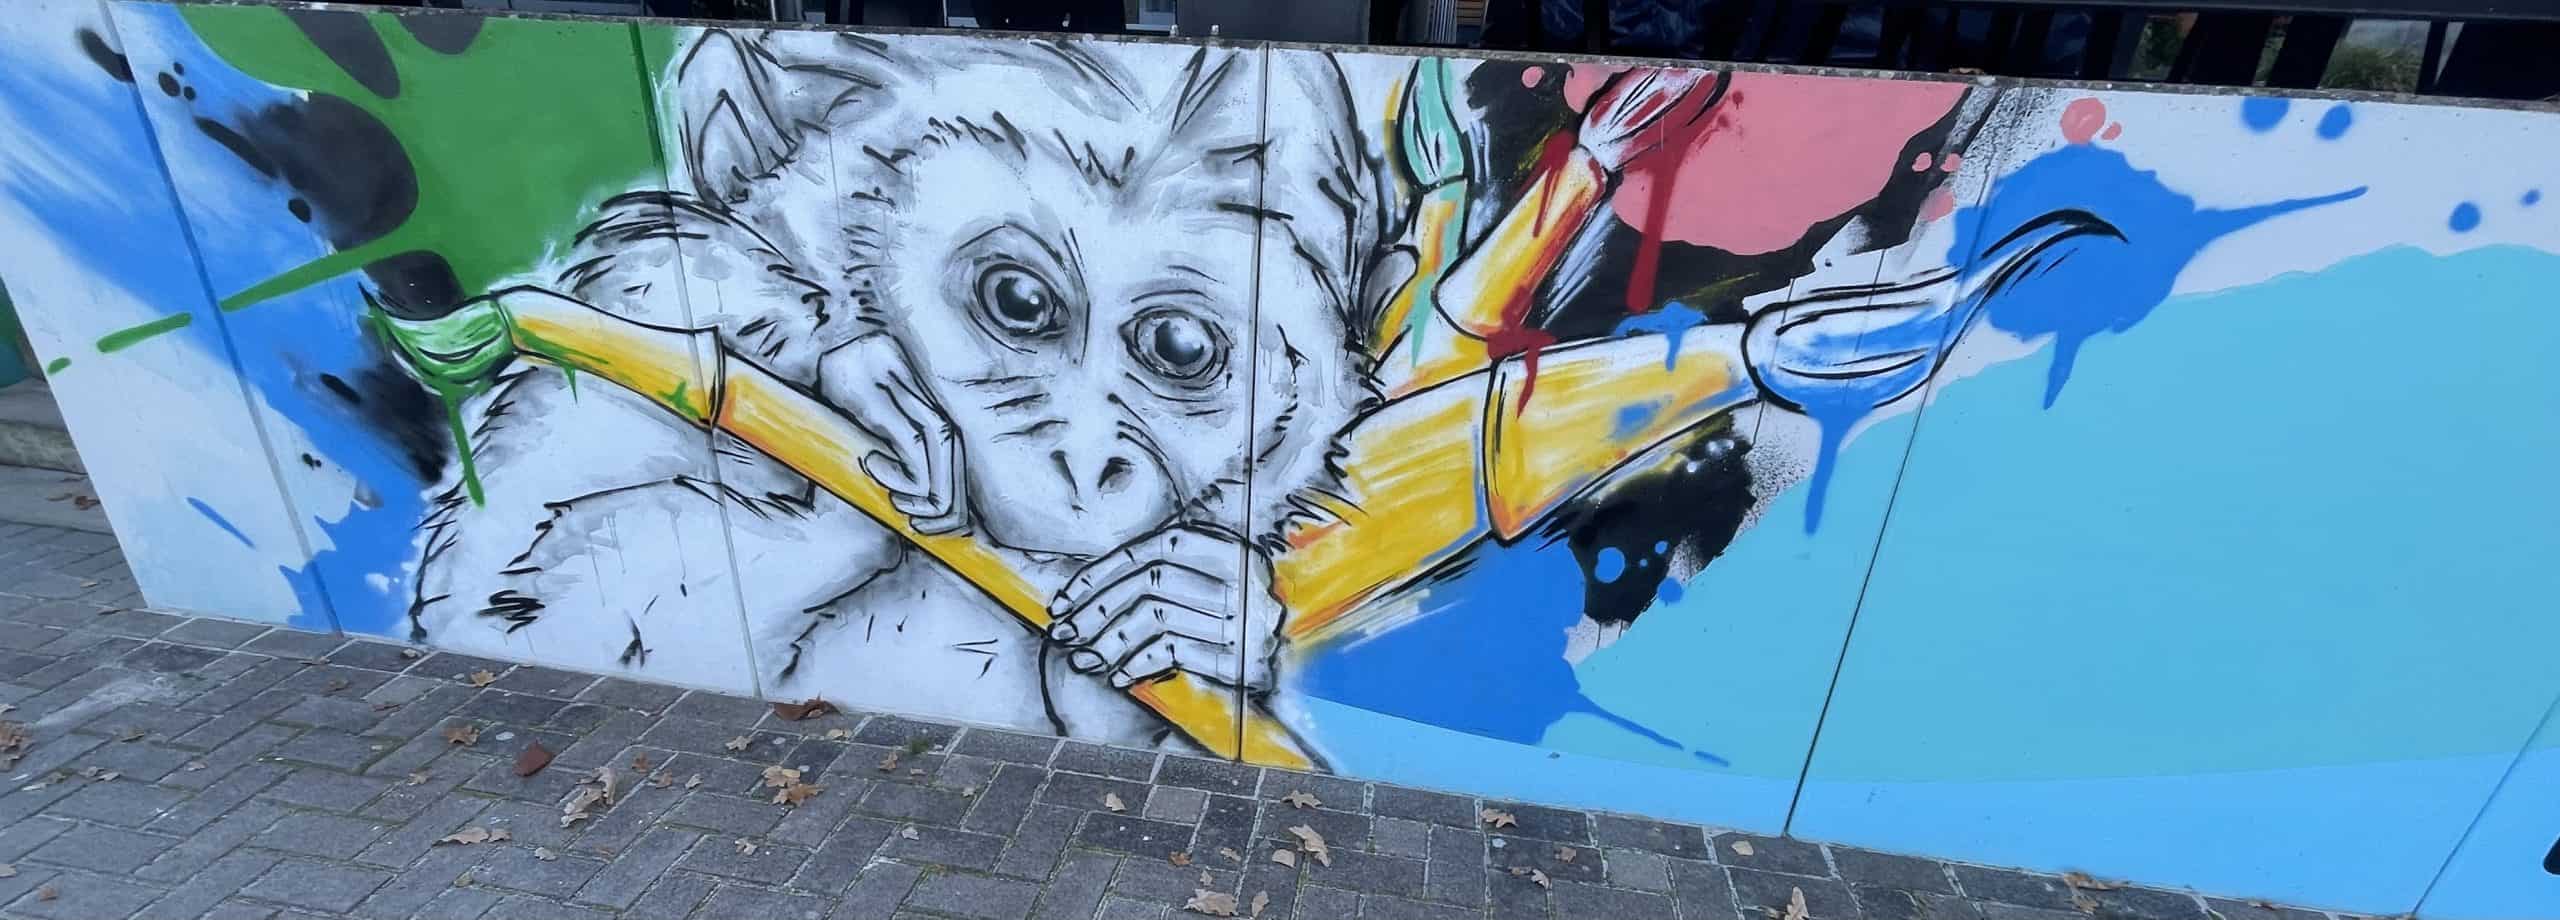 Affengraffiti auf Wand